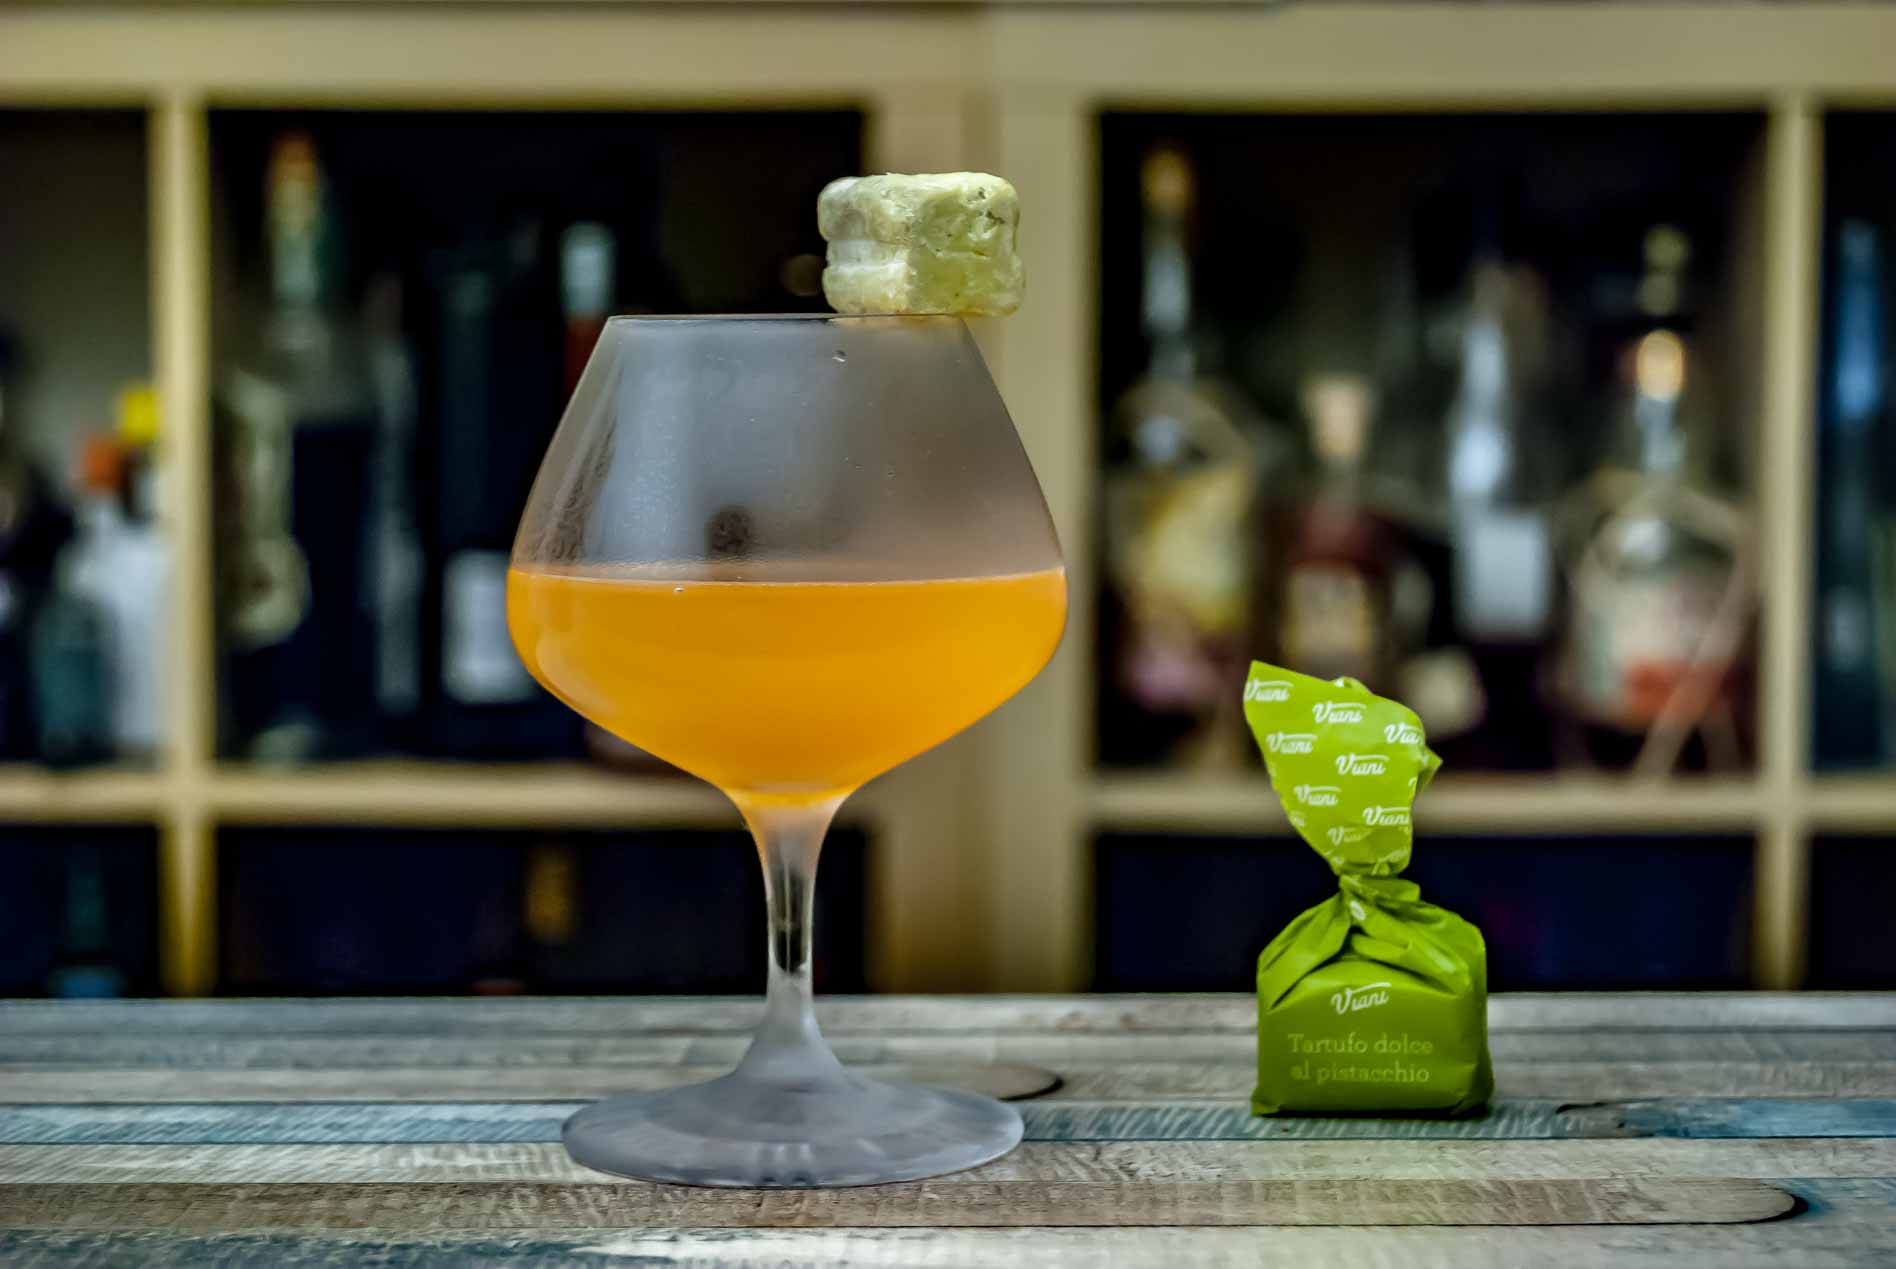 Der Actual Japanese Cocktail serviert mit einem Pistazien-Tartufo - weil's geschmacklich passt.